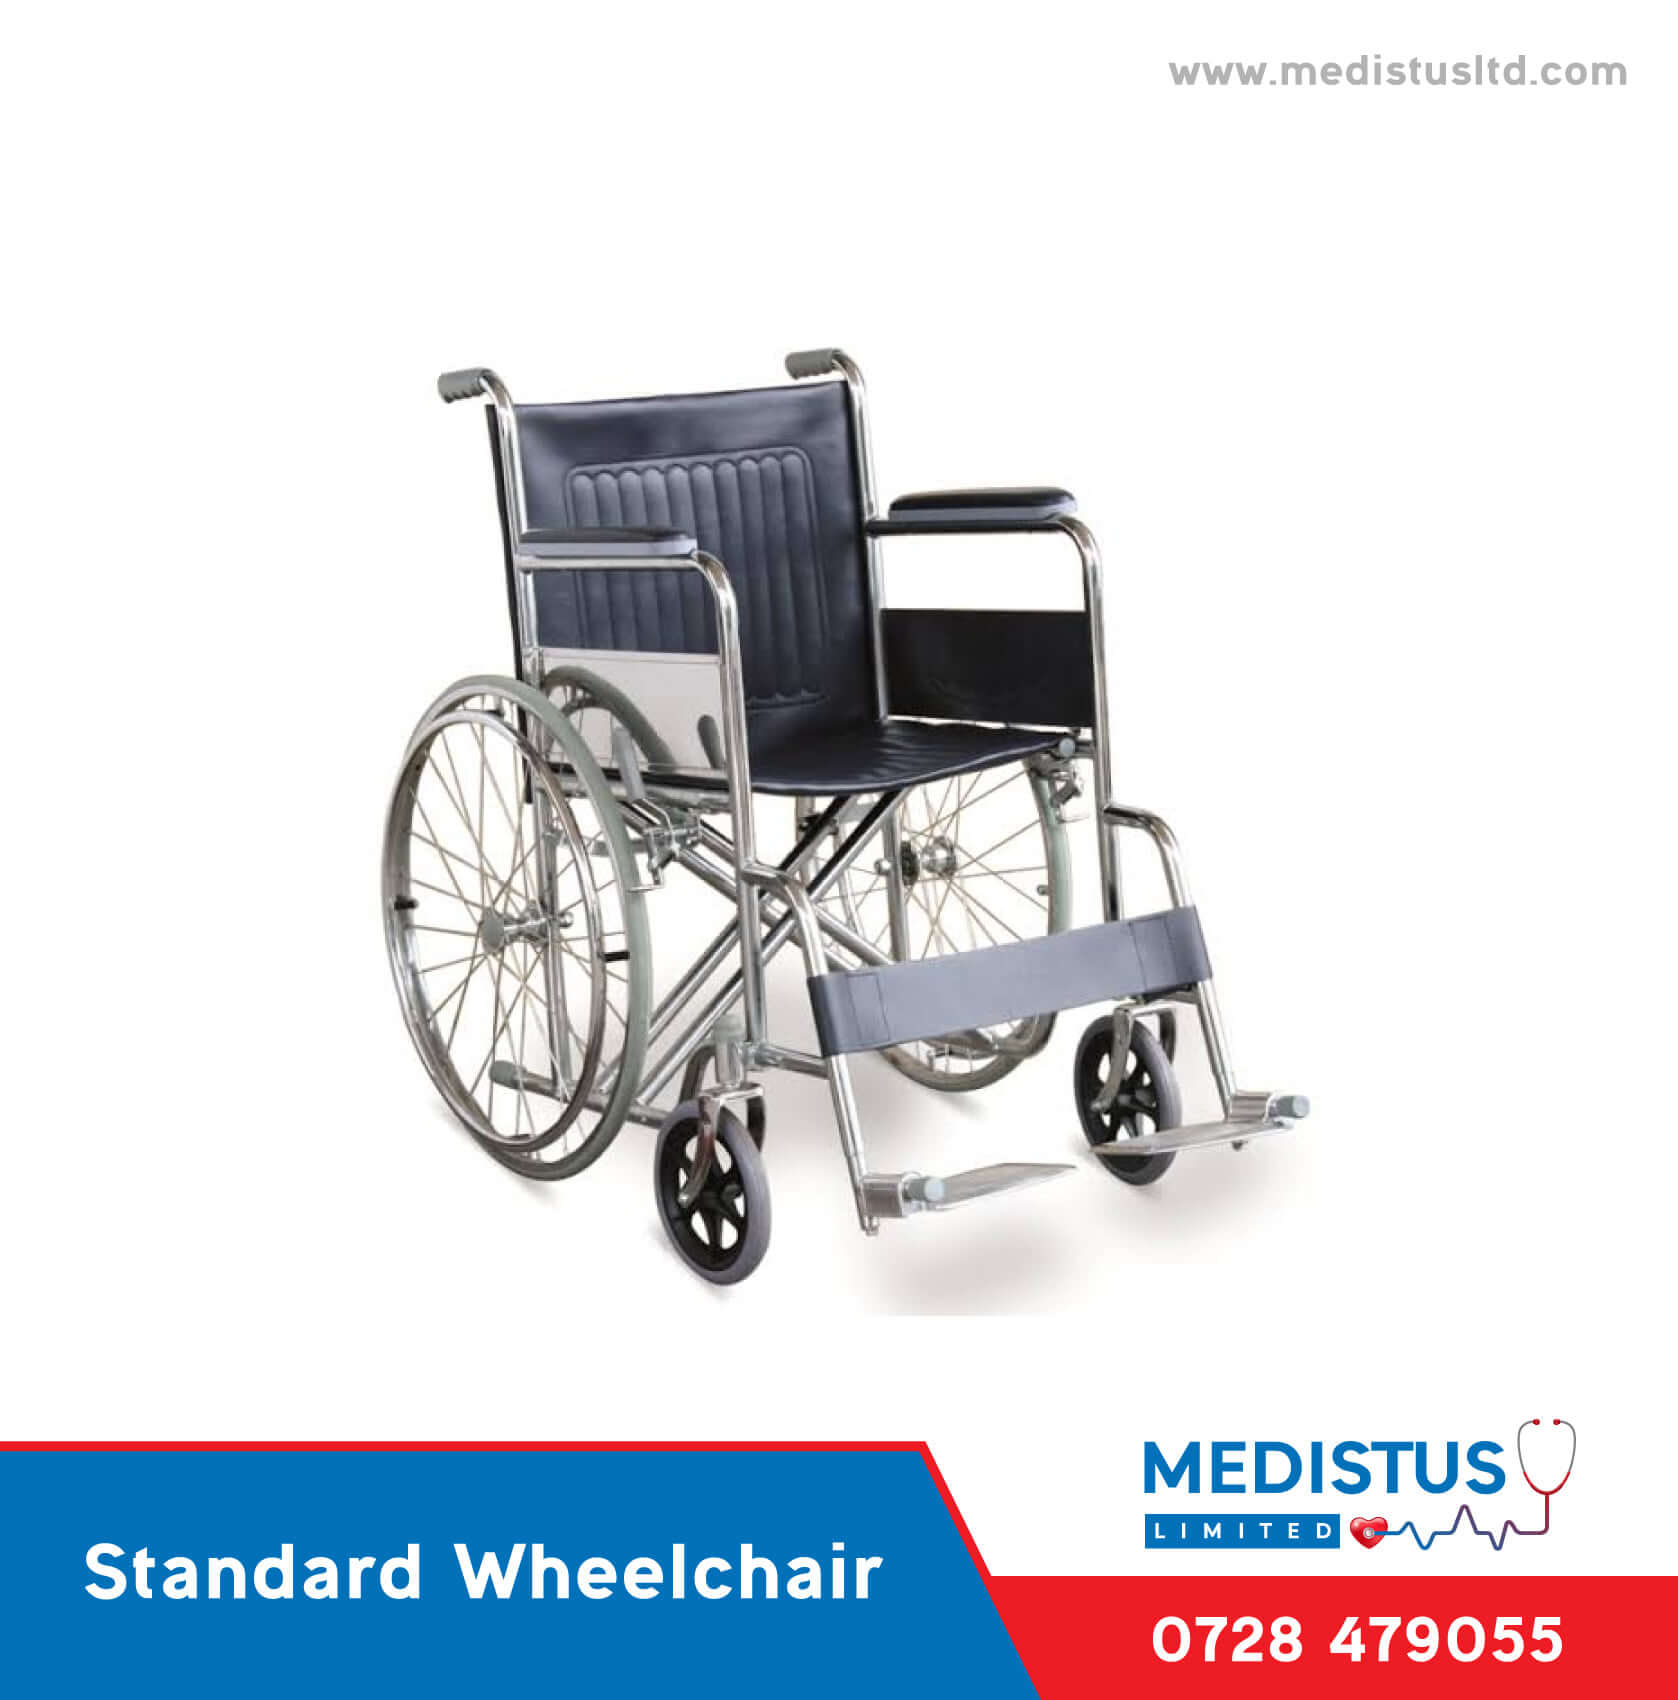 Standard Wheelchair price in Kenya